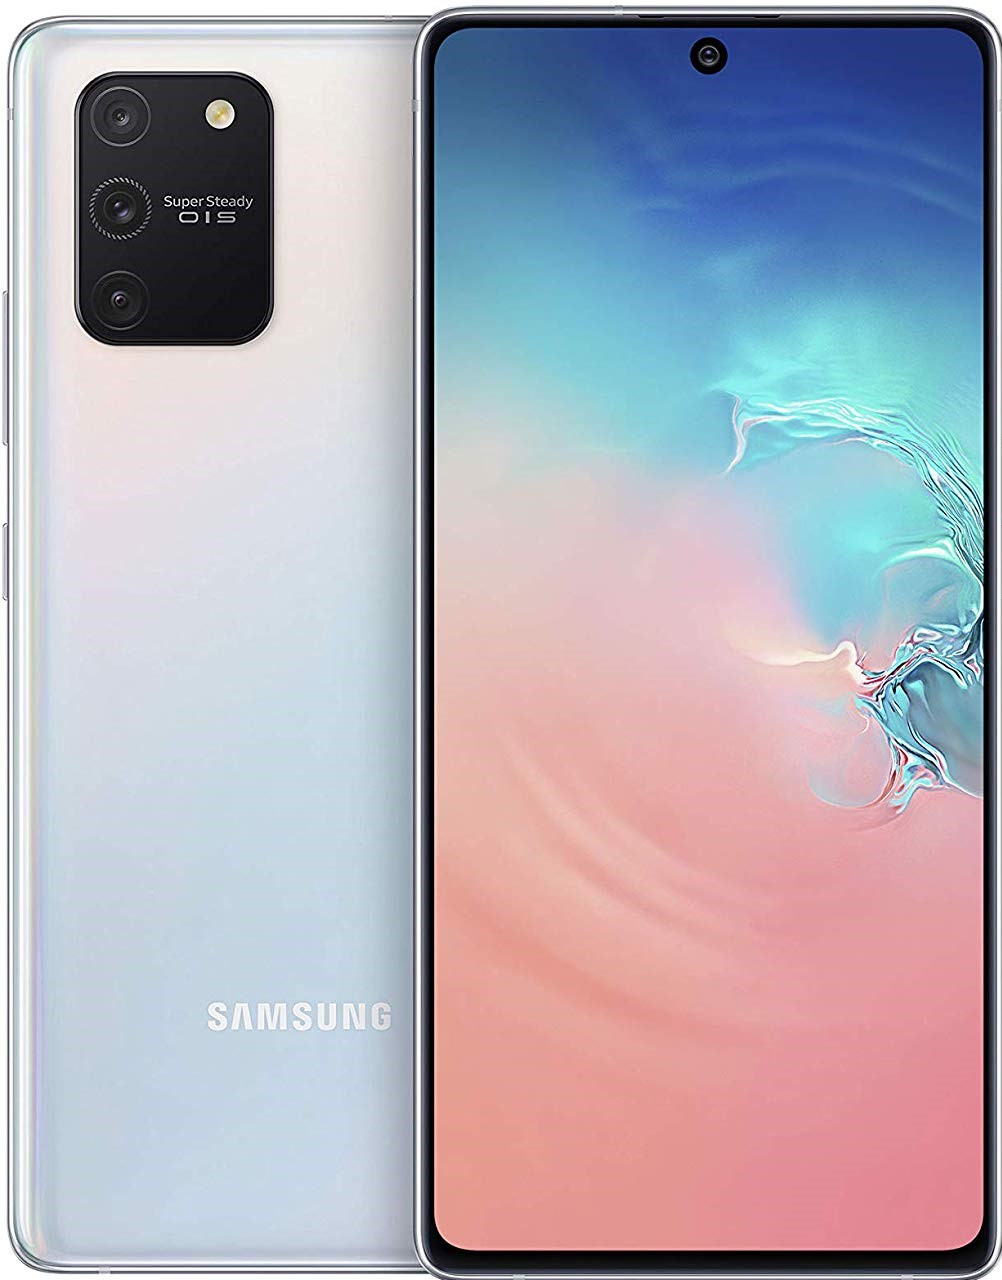 Samsung Galaxy S10 Lite 128GB Dual-SIM Prism White